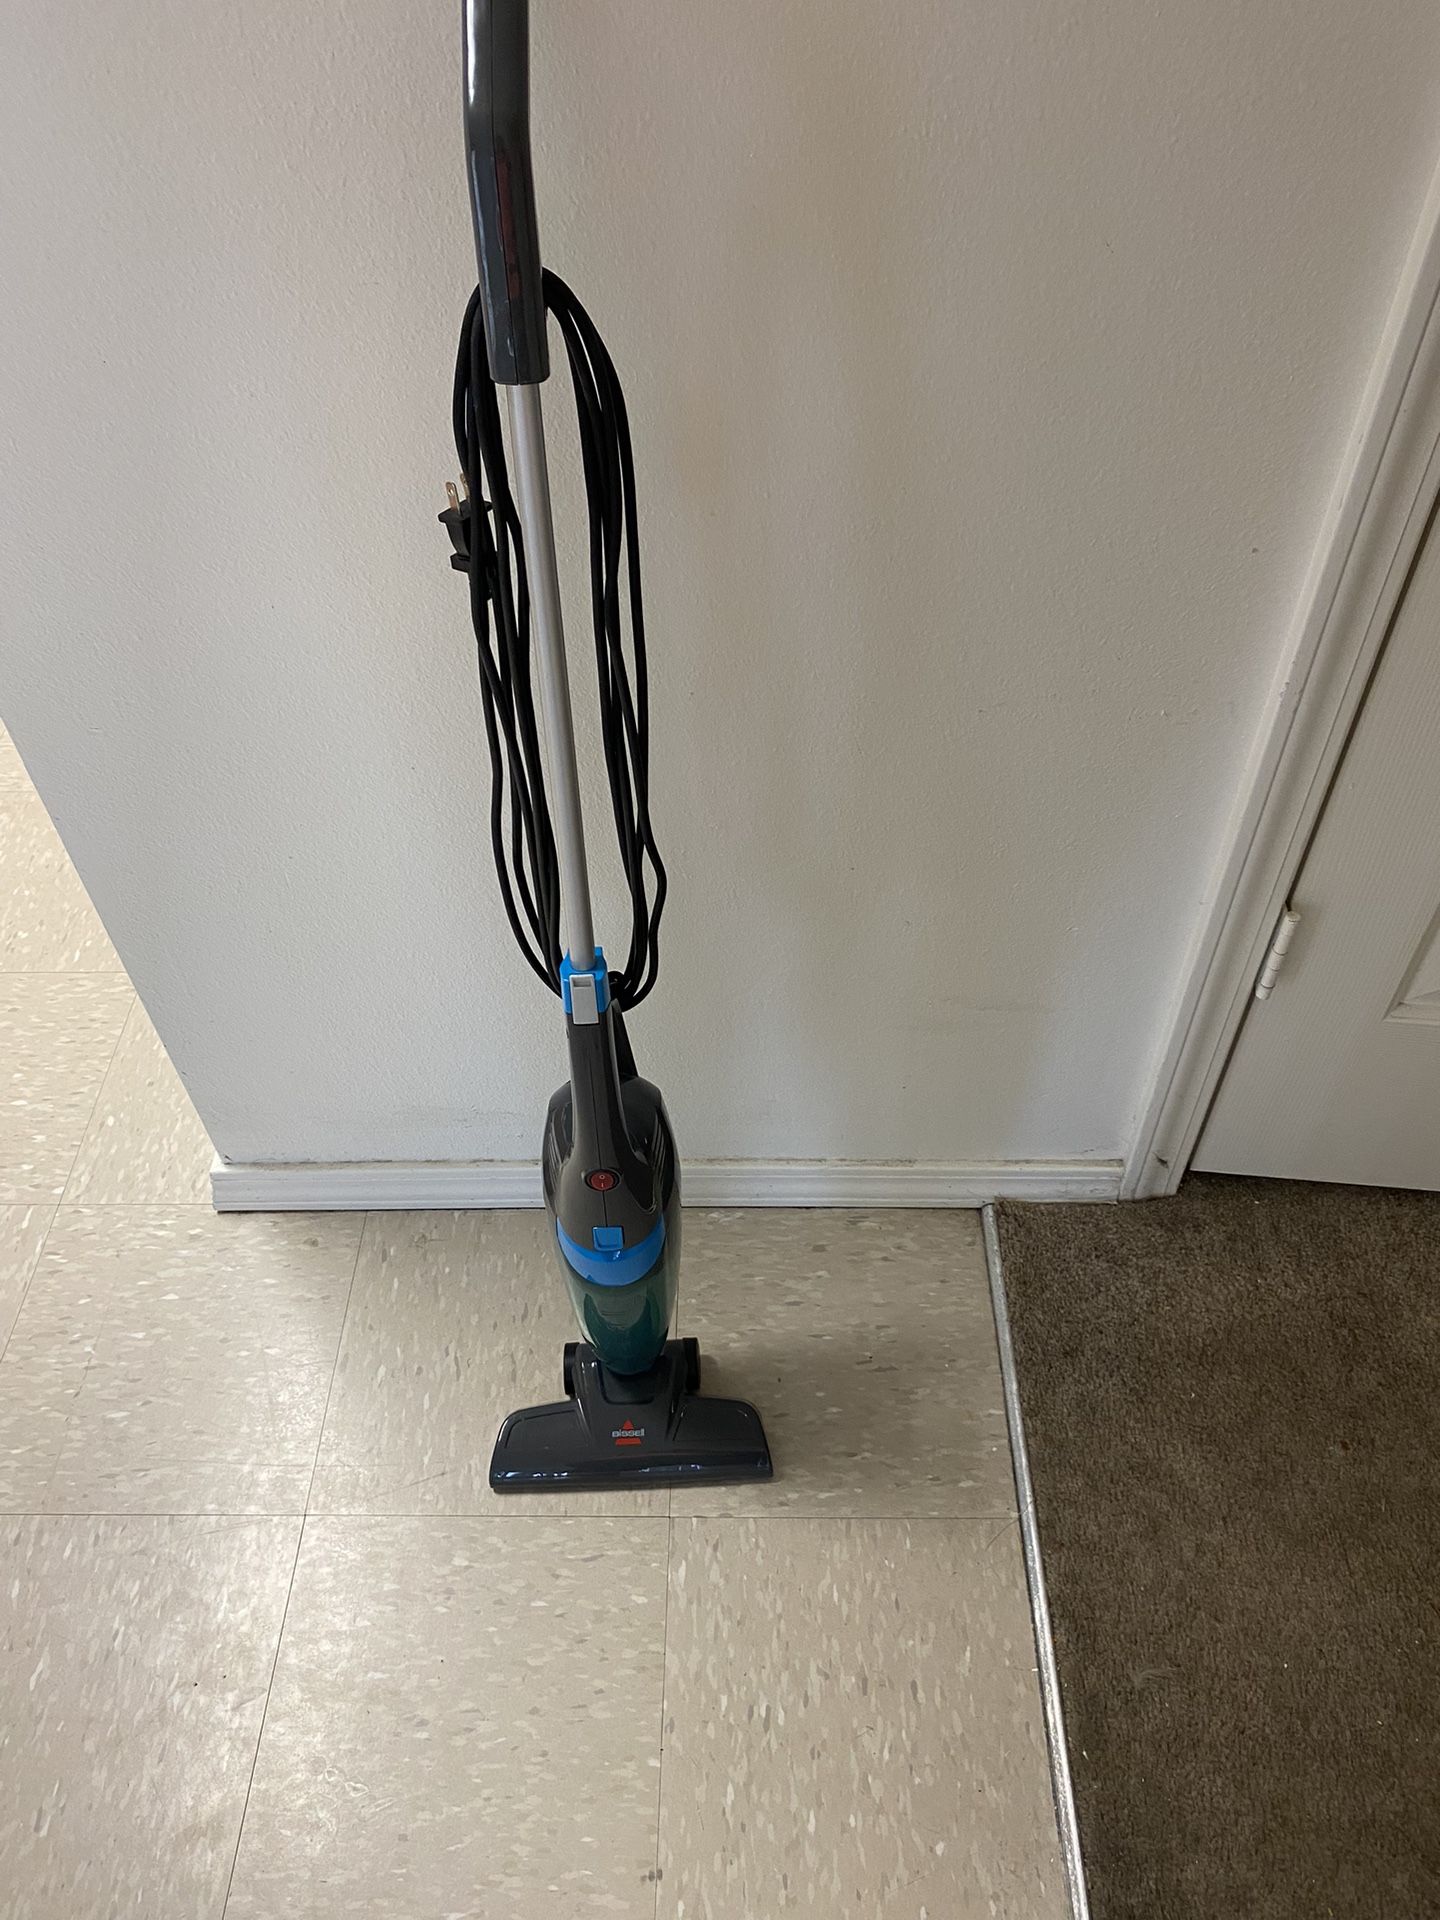 BISSELL 3-in-1 Stick Vacuum